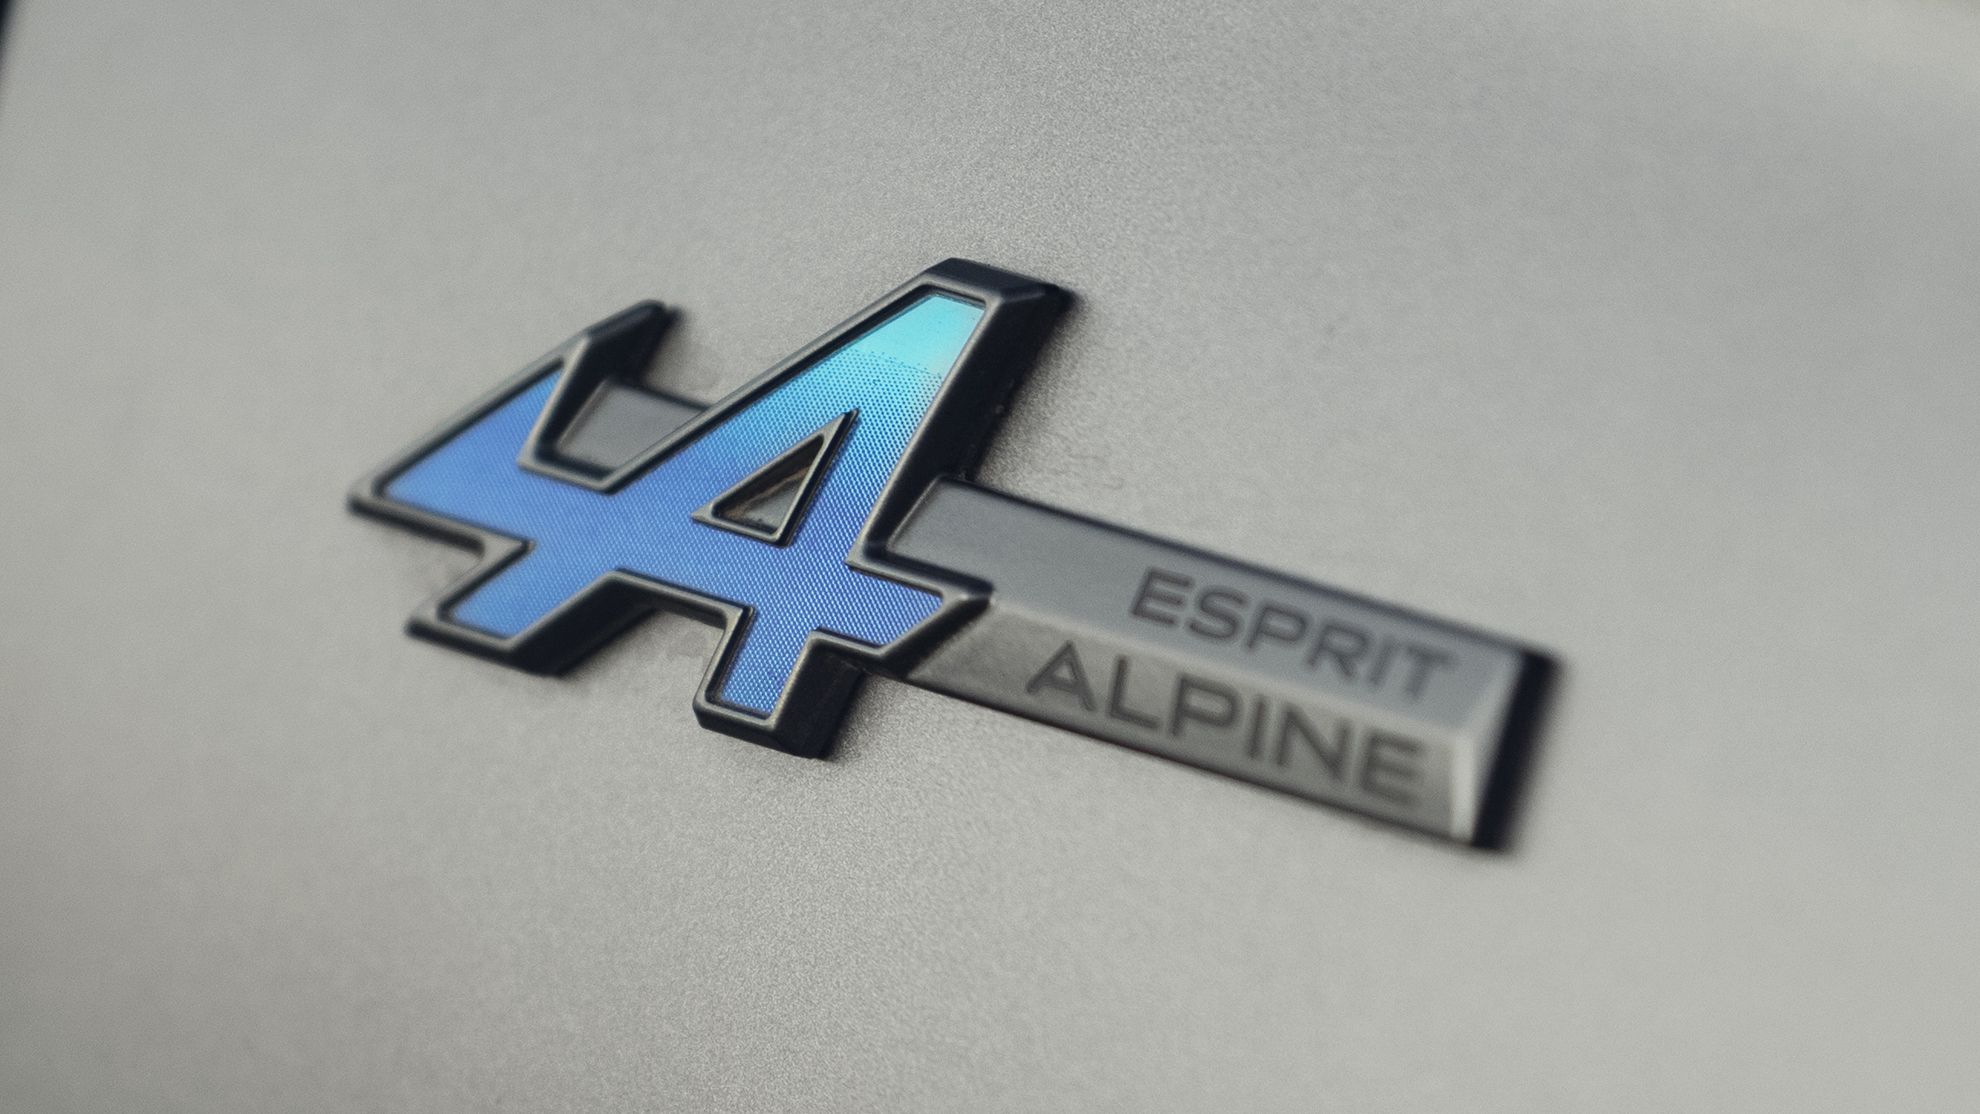 Esprit Alpine - Renault Austral - acabado deportivo - SUV - tope de gama